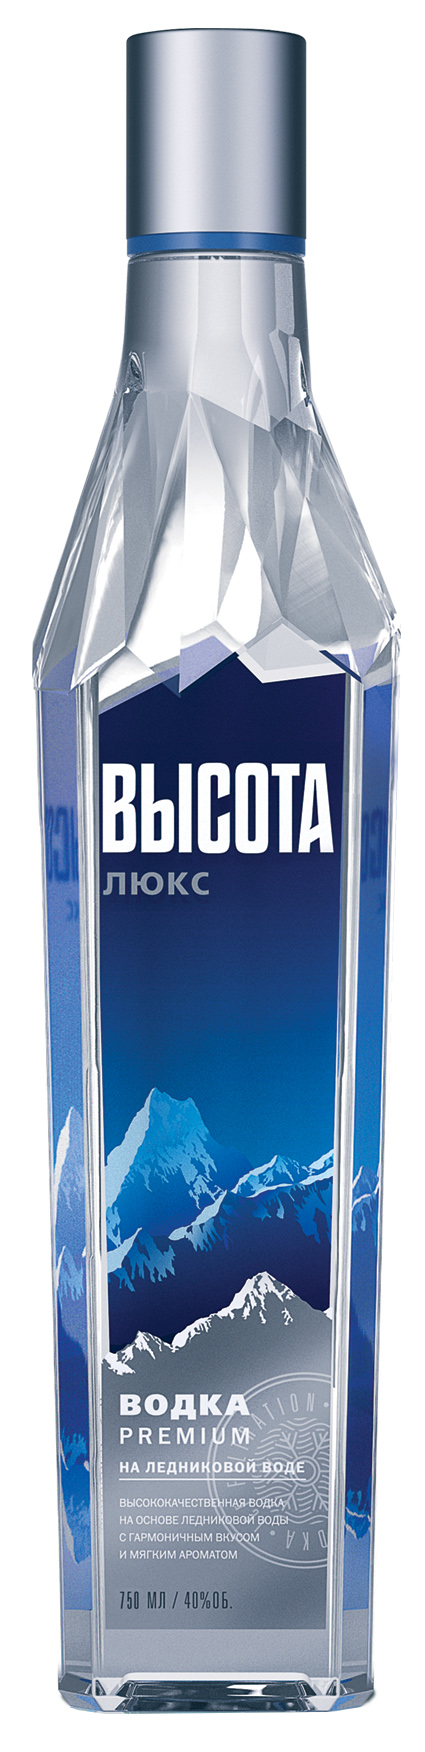 Фото: Водка «Высота Premium Люкс» становится победителем конкурса «Best Vodka» второй год подряд.